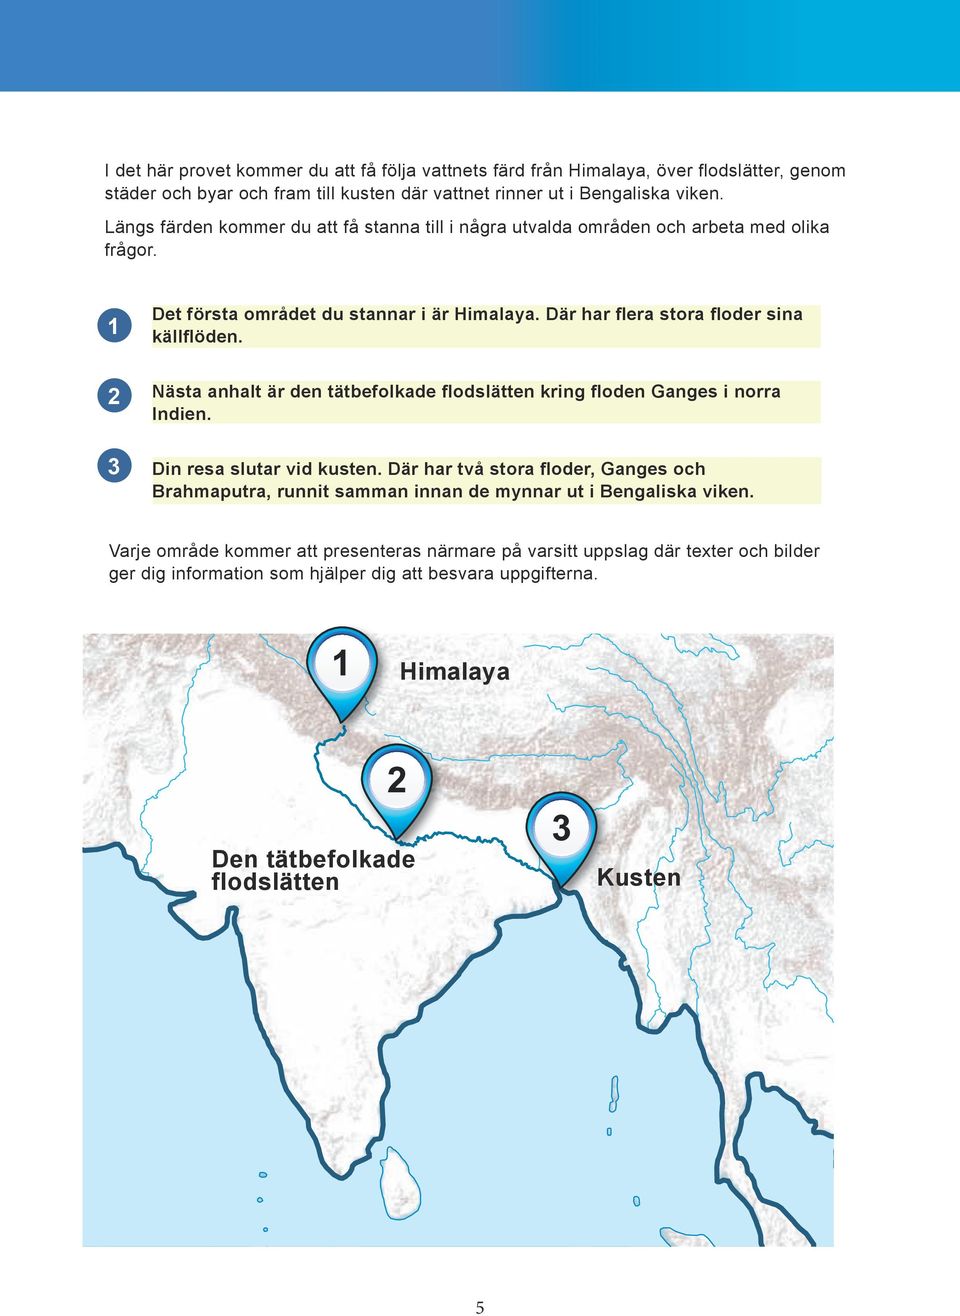 2 3 Nästa anhalt är den tätbefolkade flodslätten kring floden Ganges i norra Indien. Din resa slutar vid kusten.